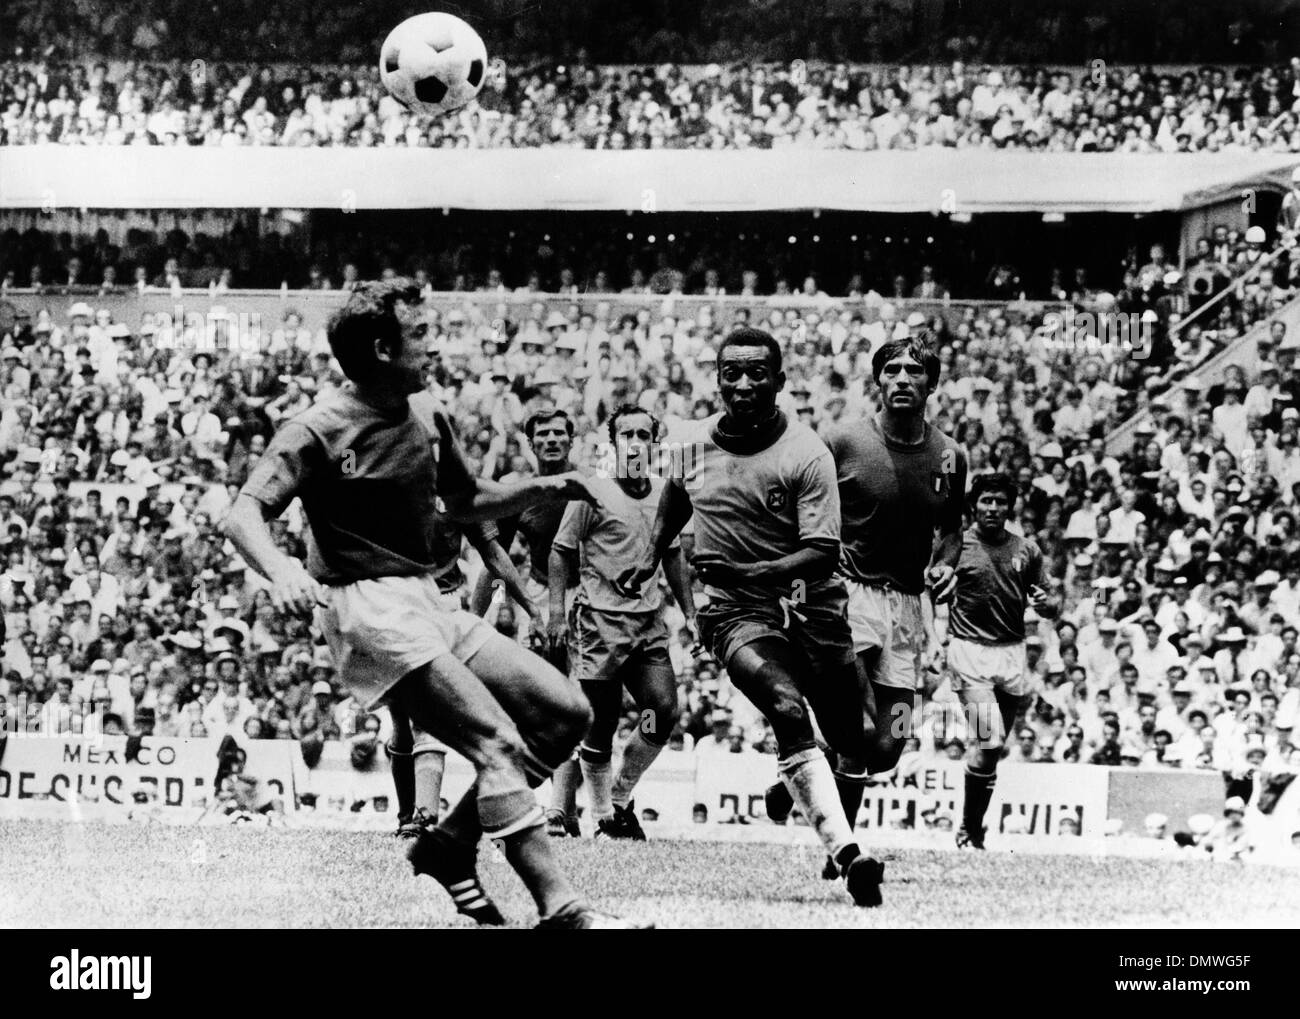 31 maggio 1970 - Città del Messico, Messico - Brasiliano giocatore di calcio EDSON NASCIMENTO 'PELE' giocando in Coppa del Mondo contro il Messico. (Credito Immagine: © Keystone Pictures USA/ZUMAPRESS.com) Foto Stock